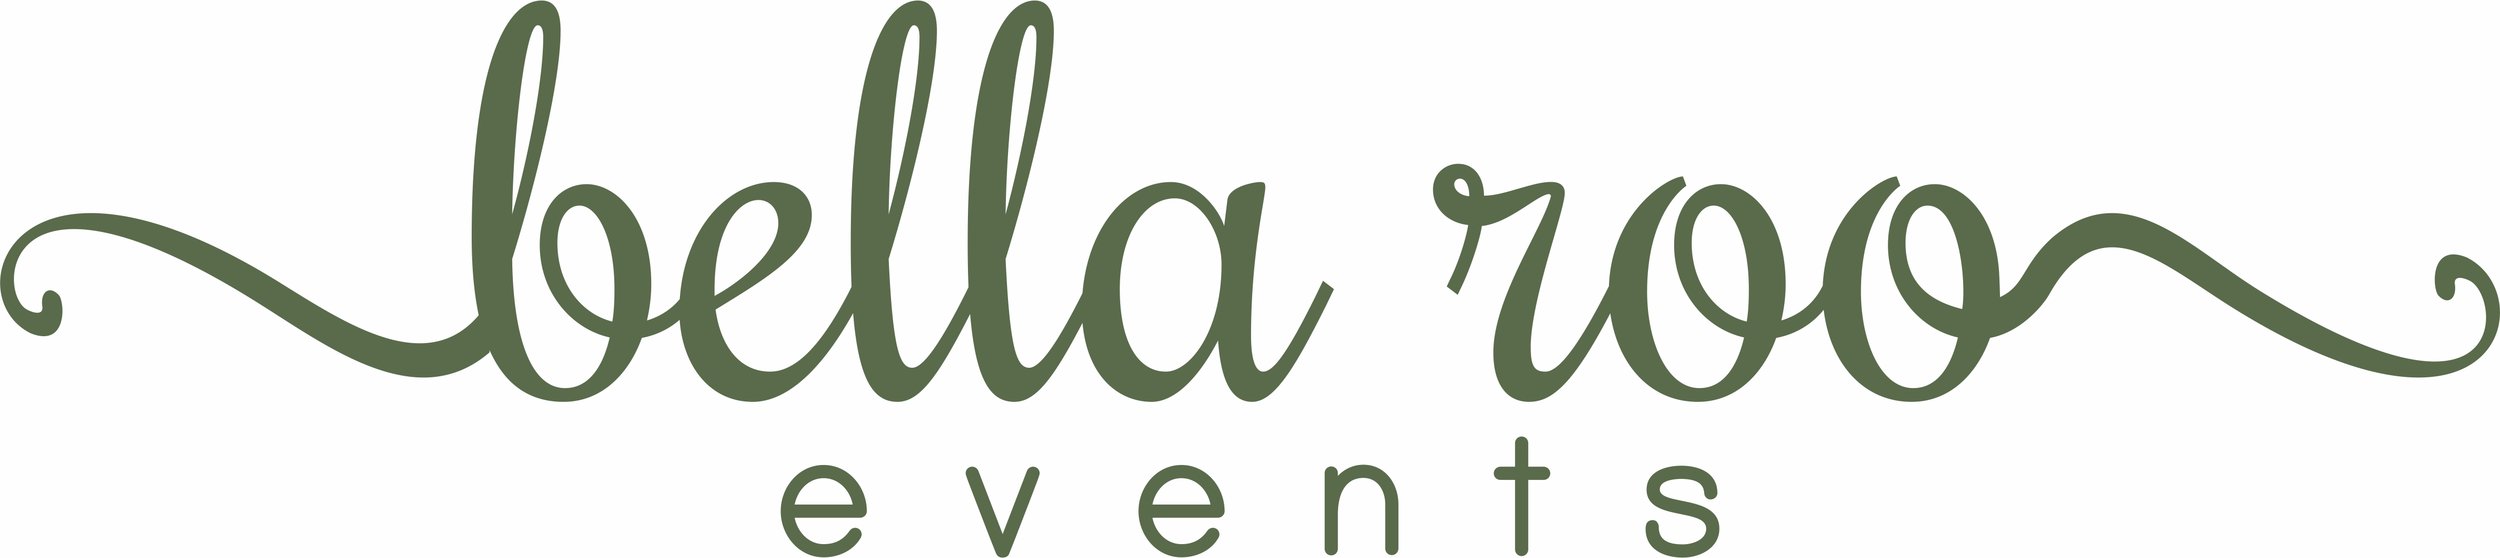 Bella Roo Events